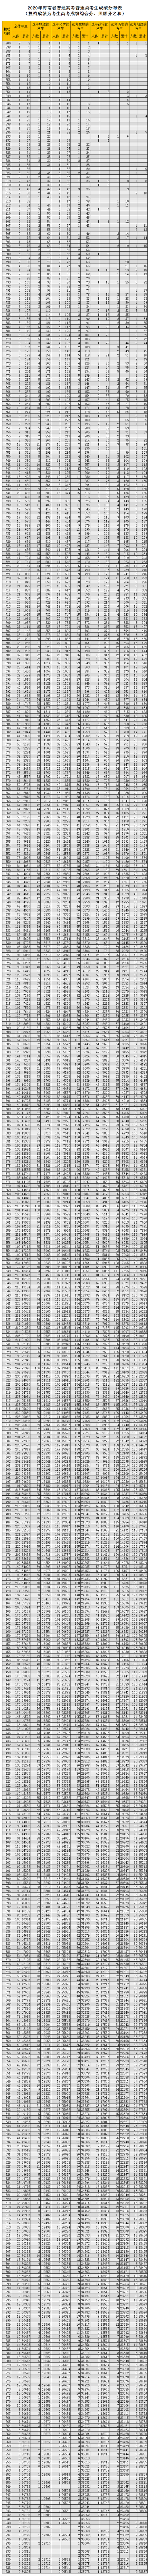 海南：2020年普通高考普通类考生成绩分布表